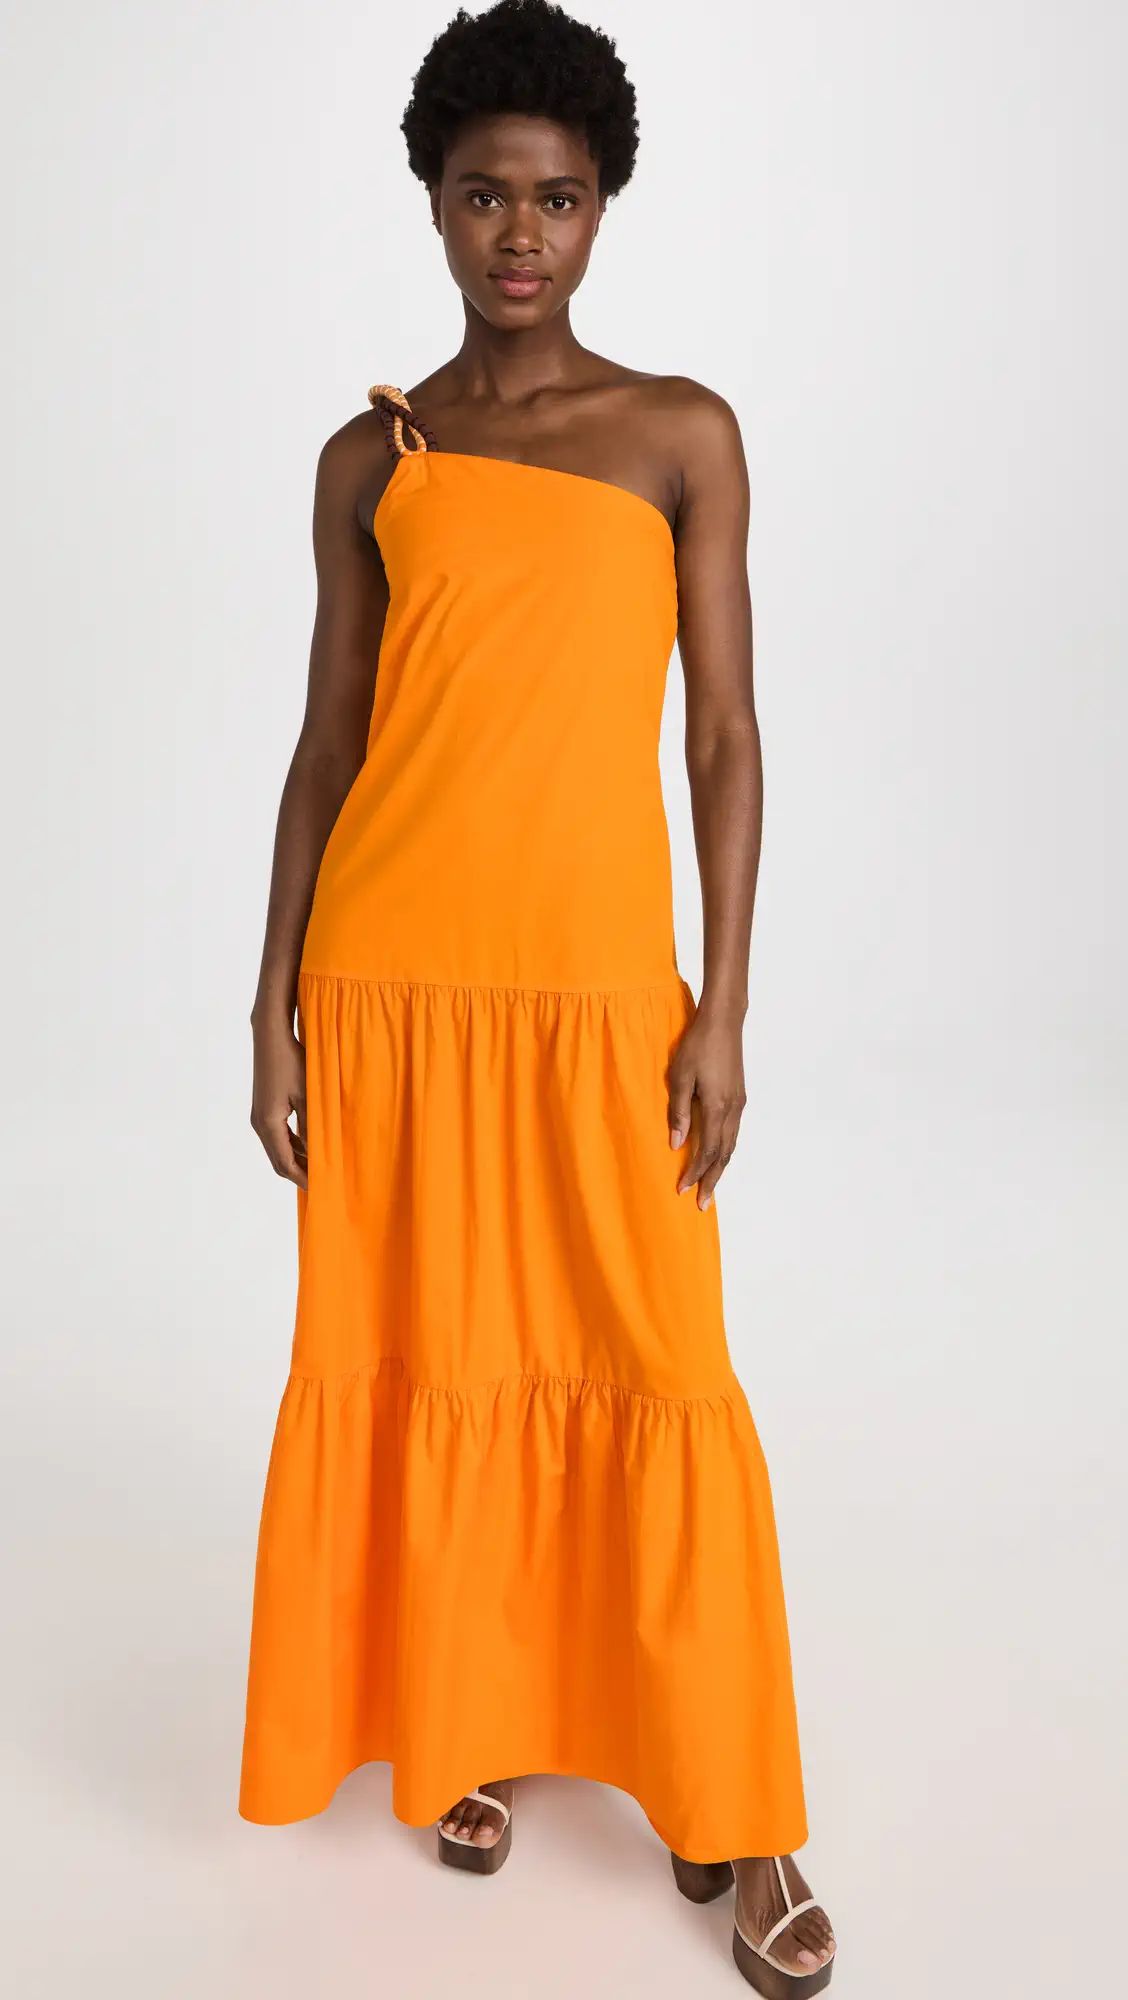 Volcanic Dreams Maxi Dress | Shopbop